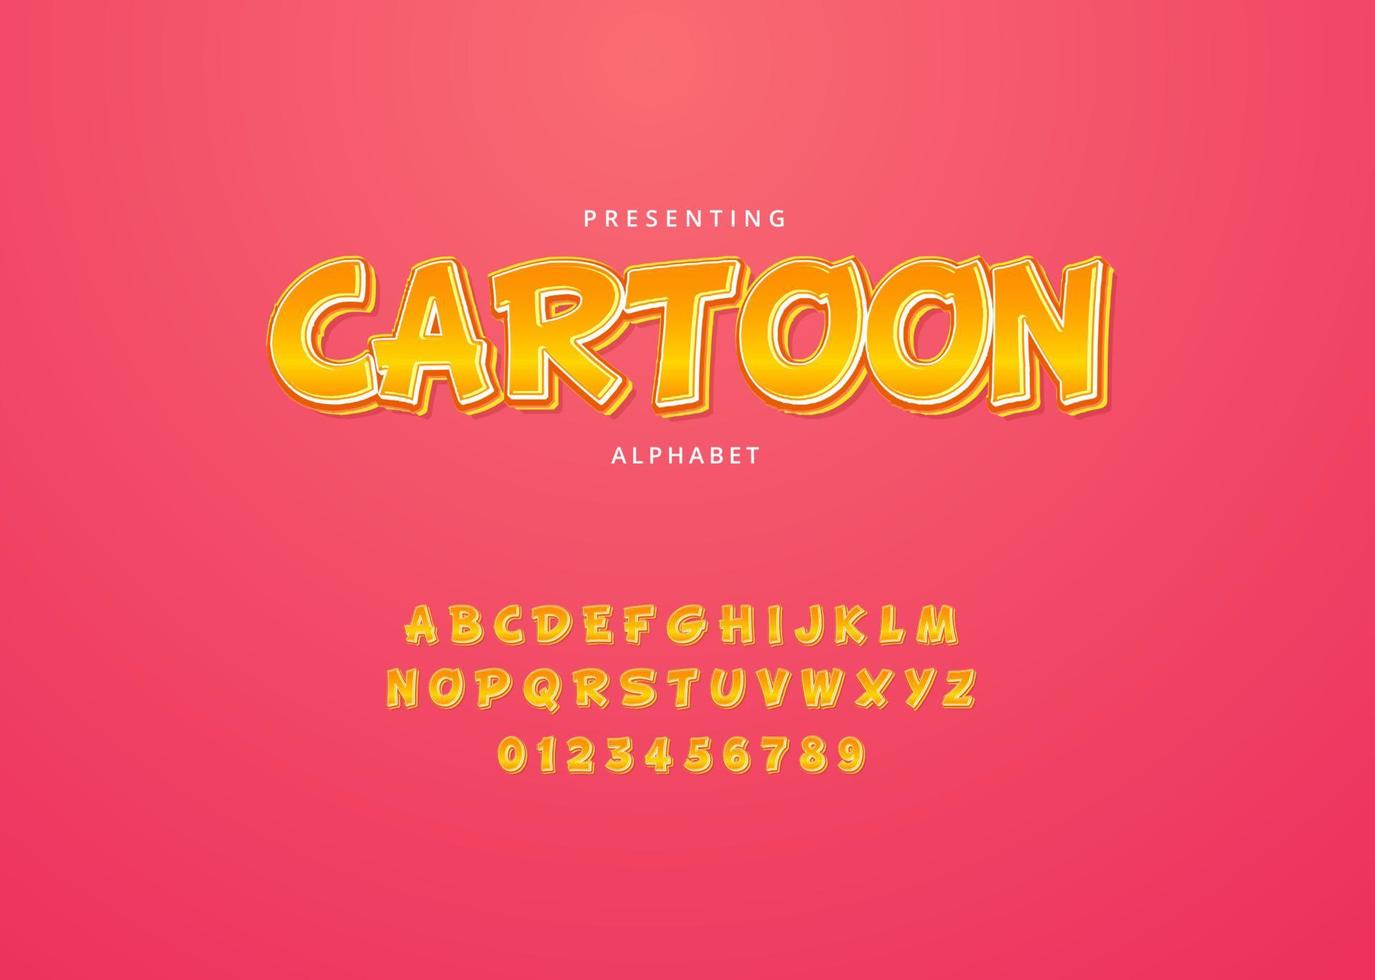 speels aangepast lettertypeontwerp in cartoonstijl, reeks letters en cijfers vector